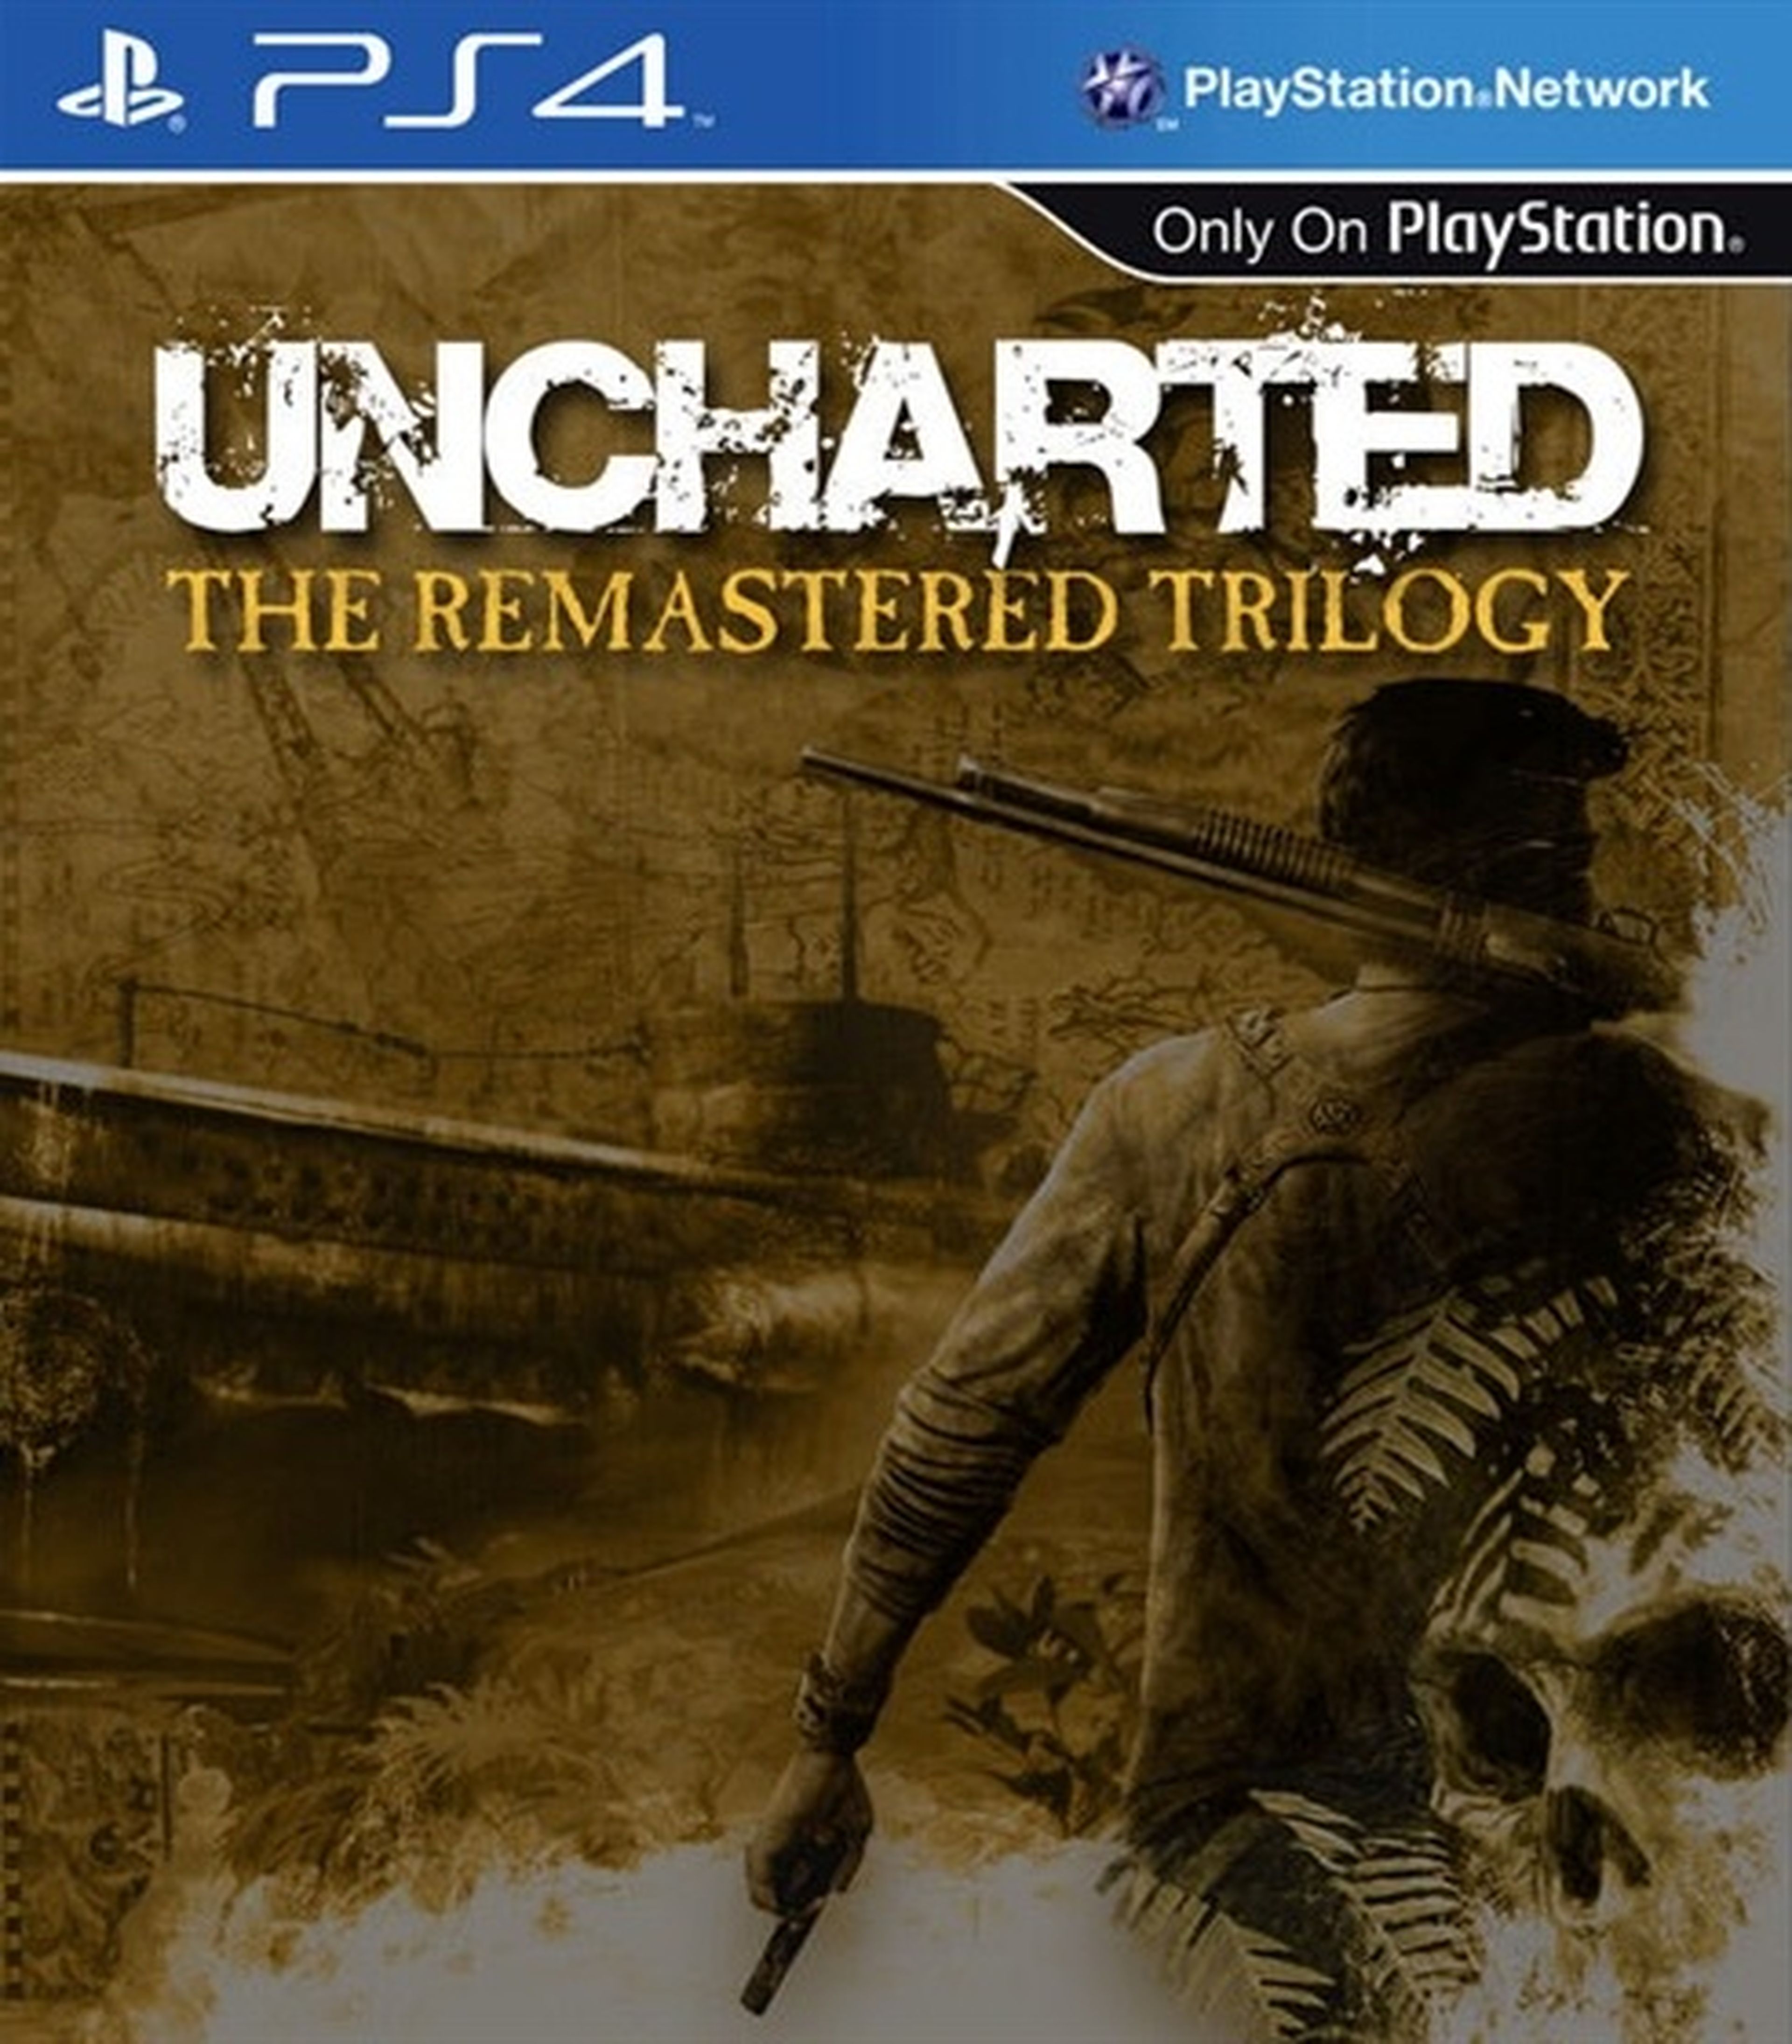 Trilogía de Uncharted remasterizada para PS4, según una tienda online